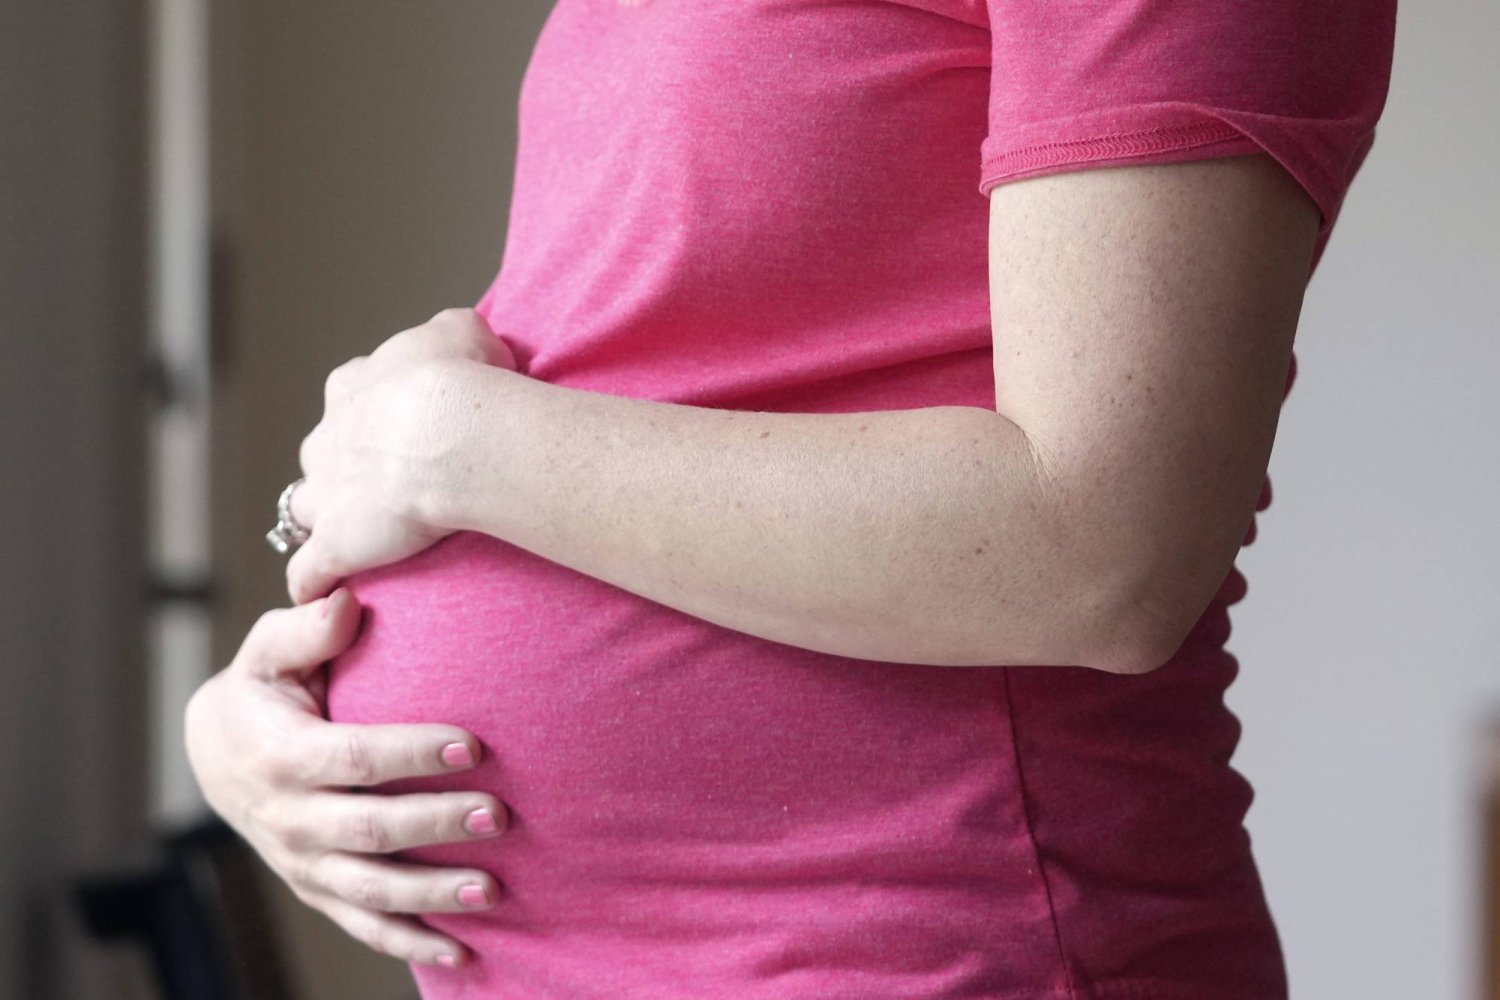 خطر مضاعفات الحمل على الصحة يظل مرتفعاً لسنوات (أ.ب)